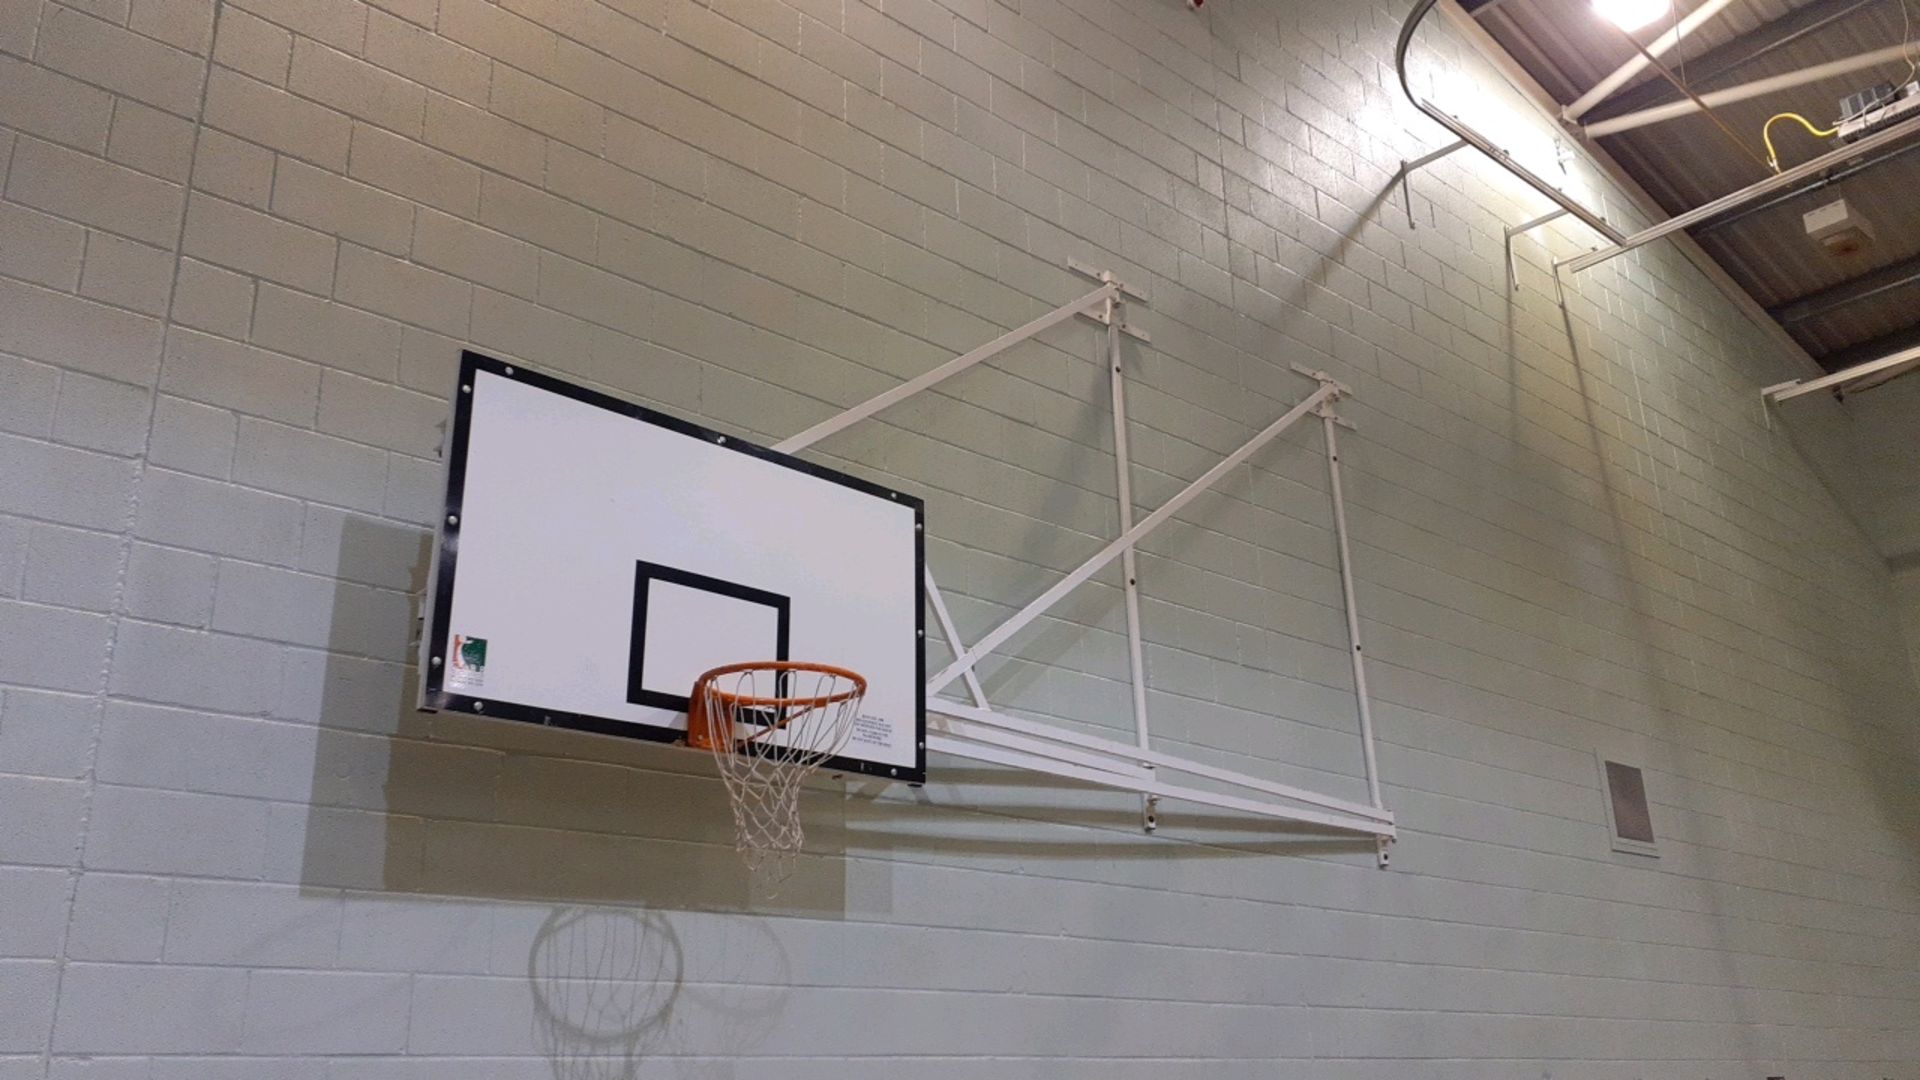 Basketball hoops - Image 2 of 2